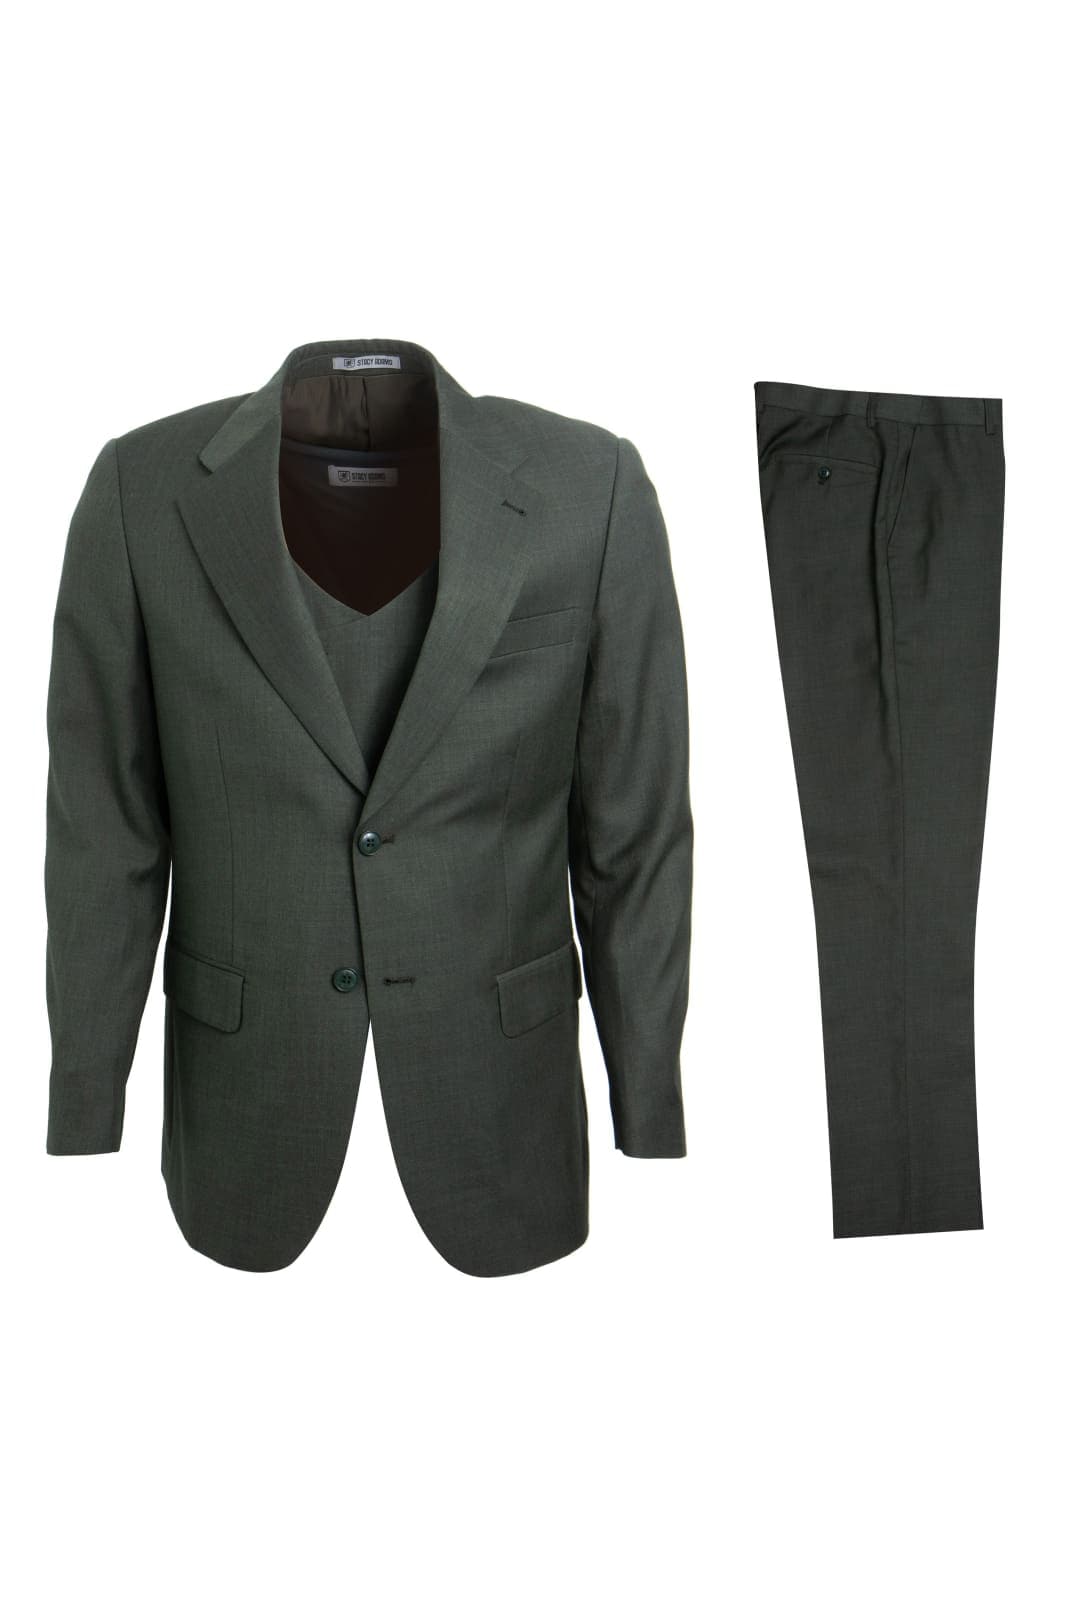 olive Stacy Adams Men’s Suit - olive / 34R / SM324H1-04 - Mens-suits